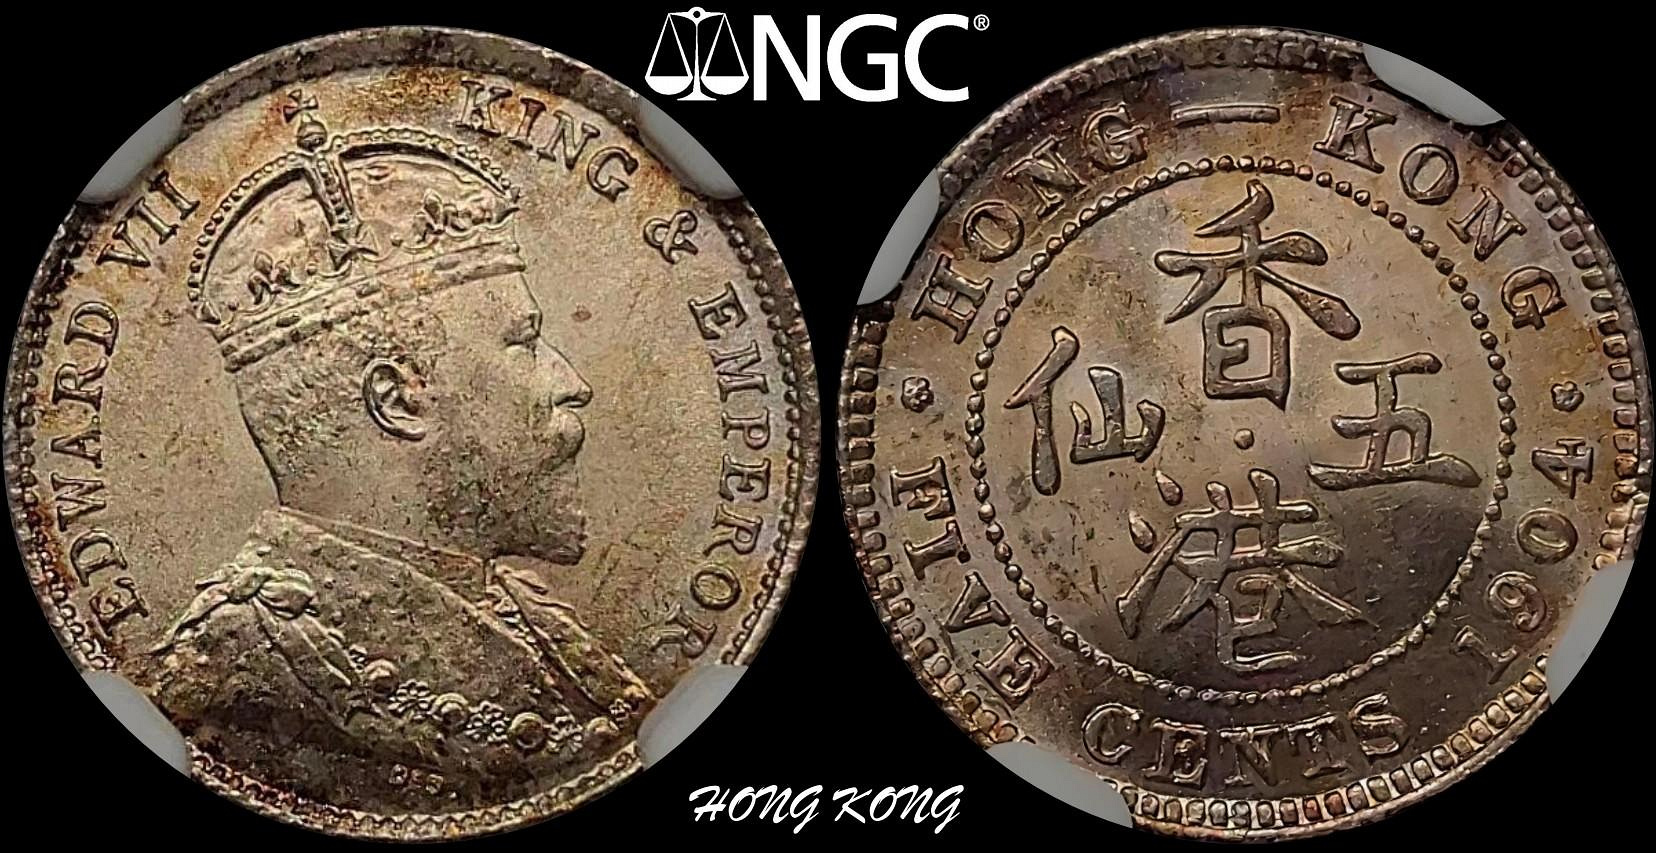 【二手】 英屬香港 1904年 愛德華七世 5仙銀幣3148 外國錢幣 硬幣 錢幣【奇摩收藏】可議價